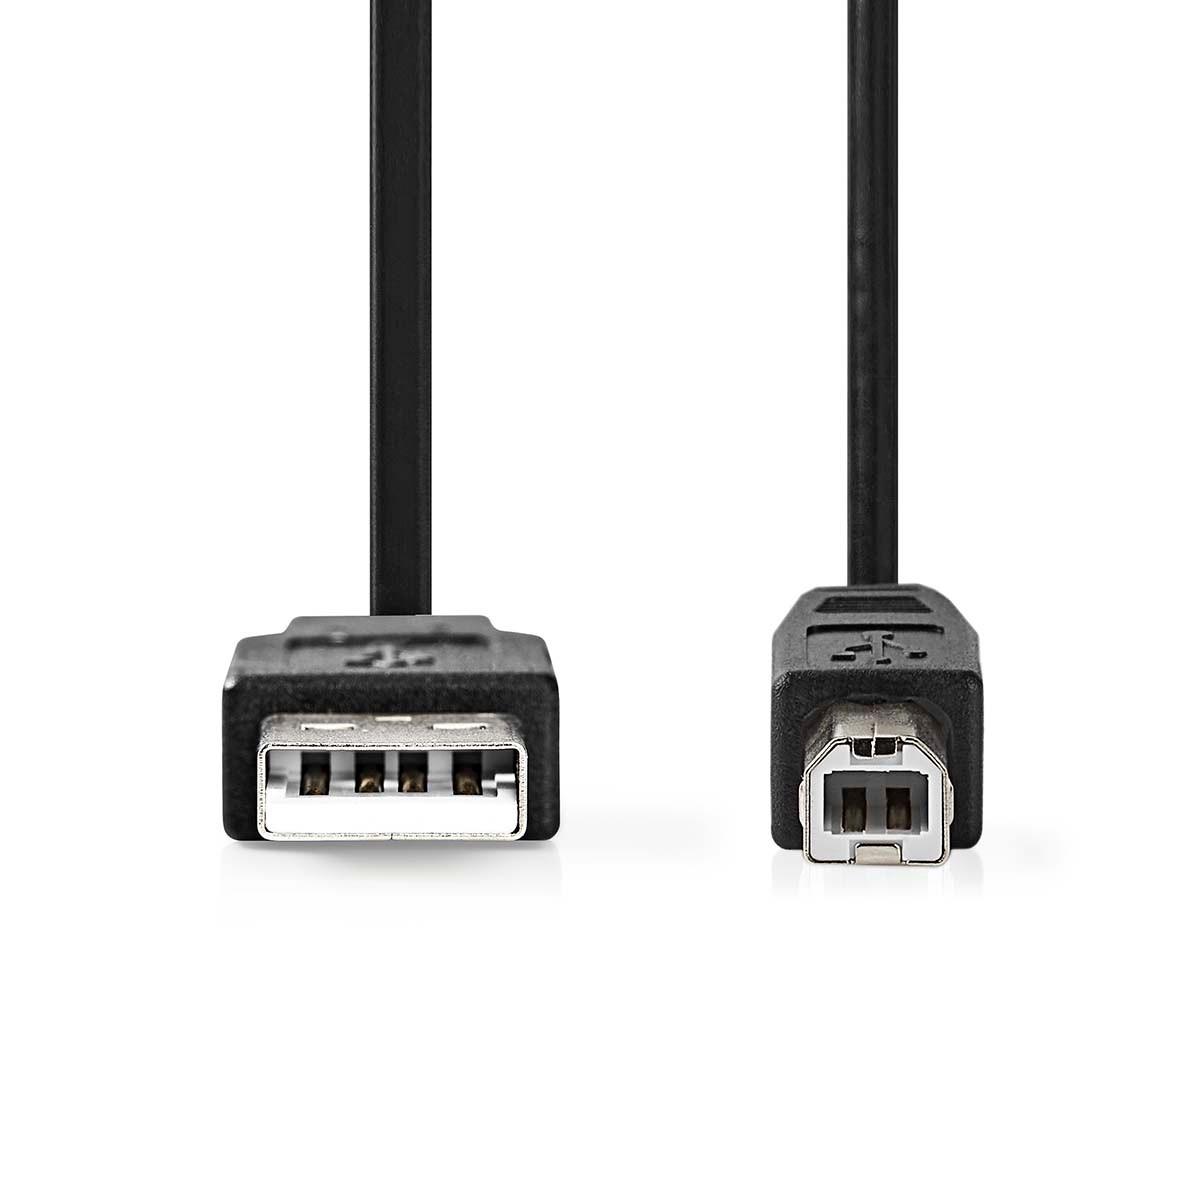 Nedis  Cavo USB | USB 2.0 | USB-A Maschio | USB-B Maschio | 10 W | 480 Mbps | Nichelato | 3,00 m | Rotondo | PVC | Nero | Etichetta 